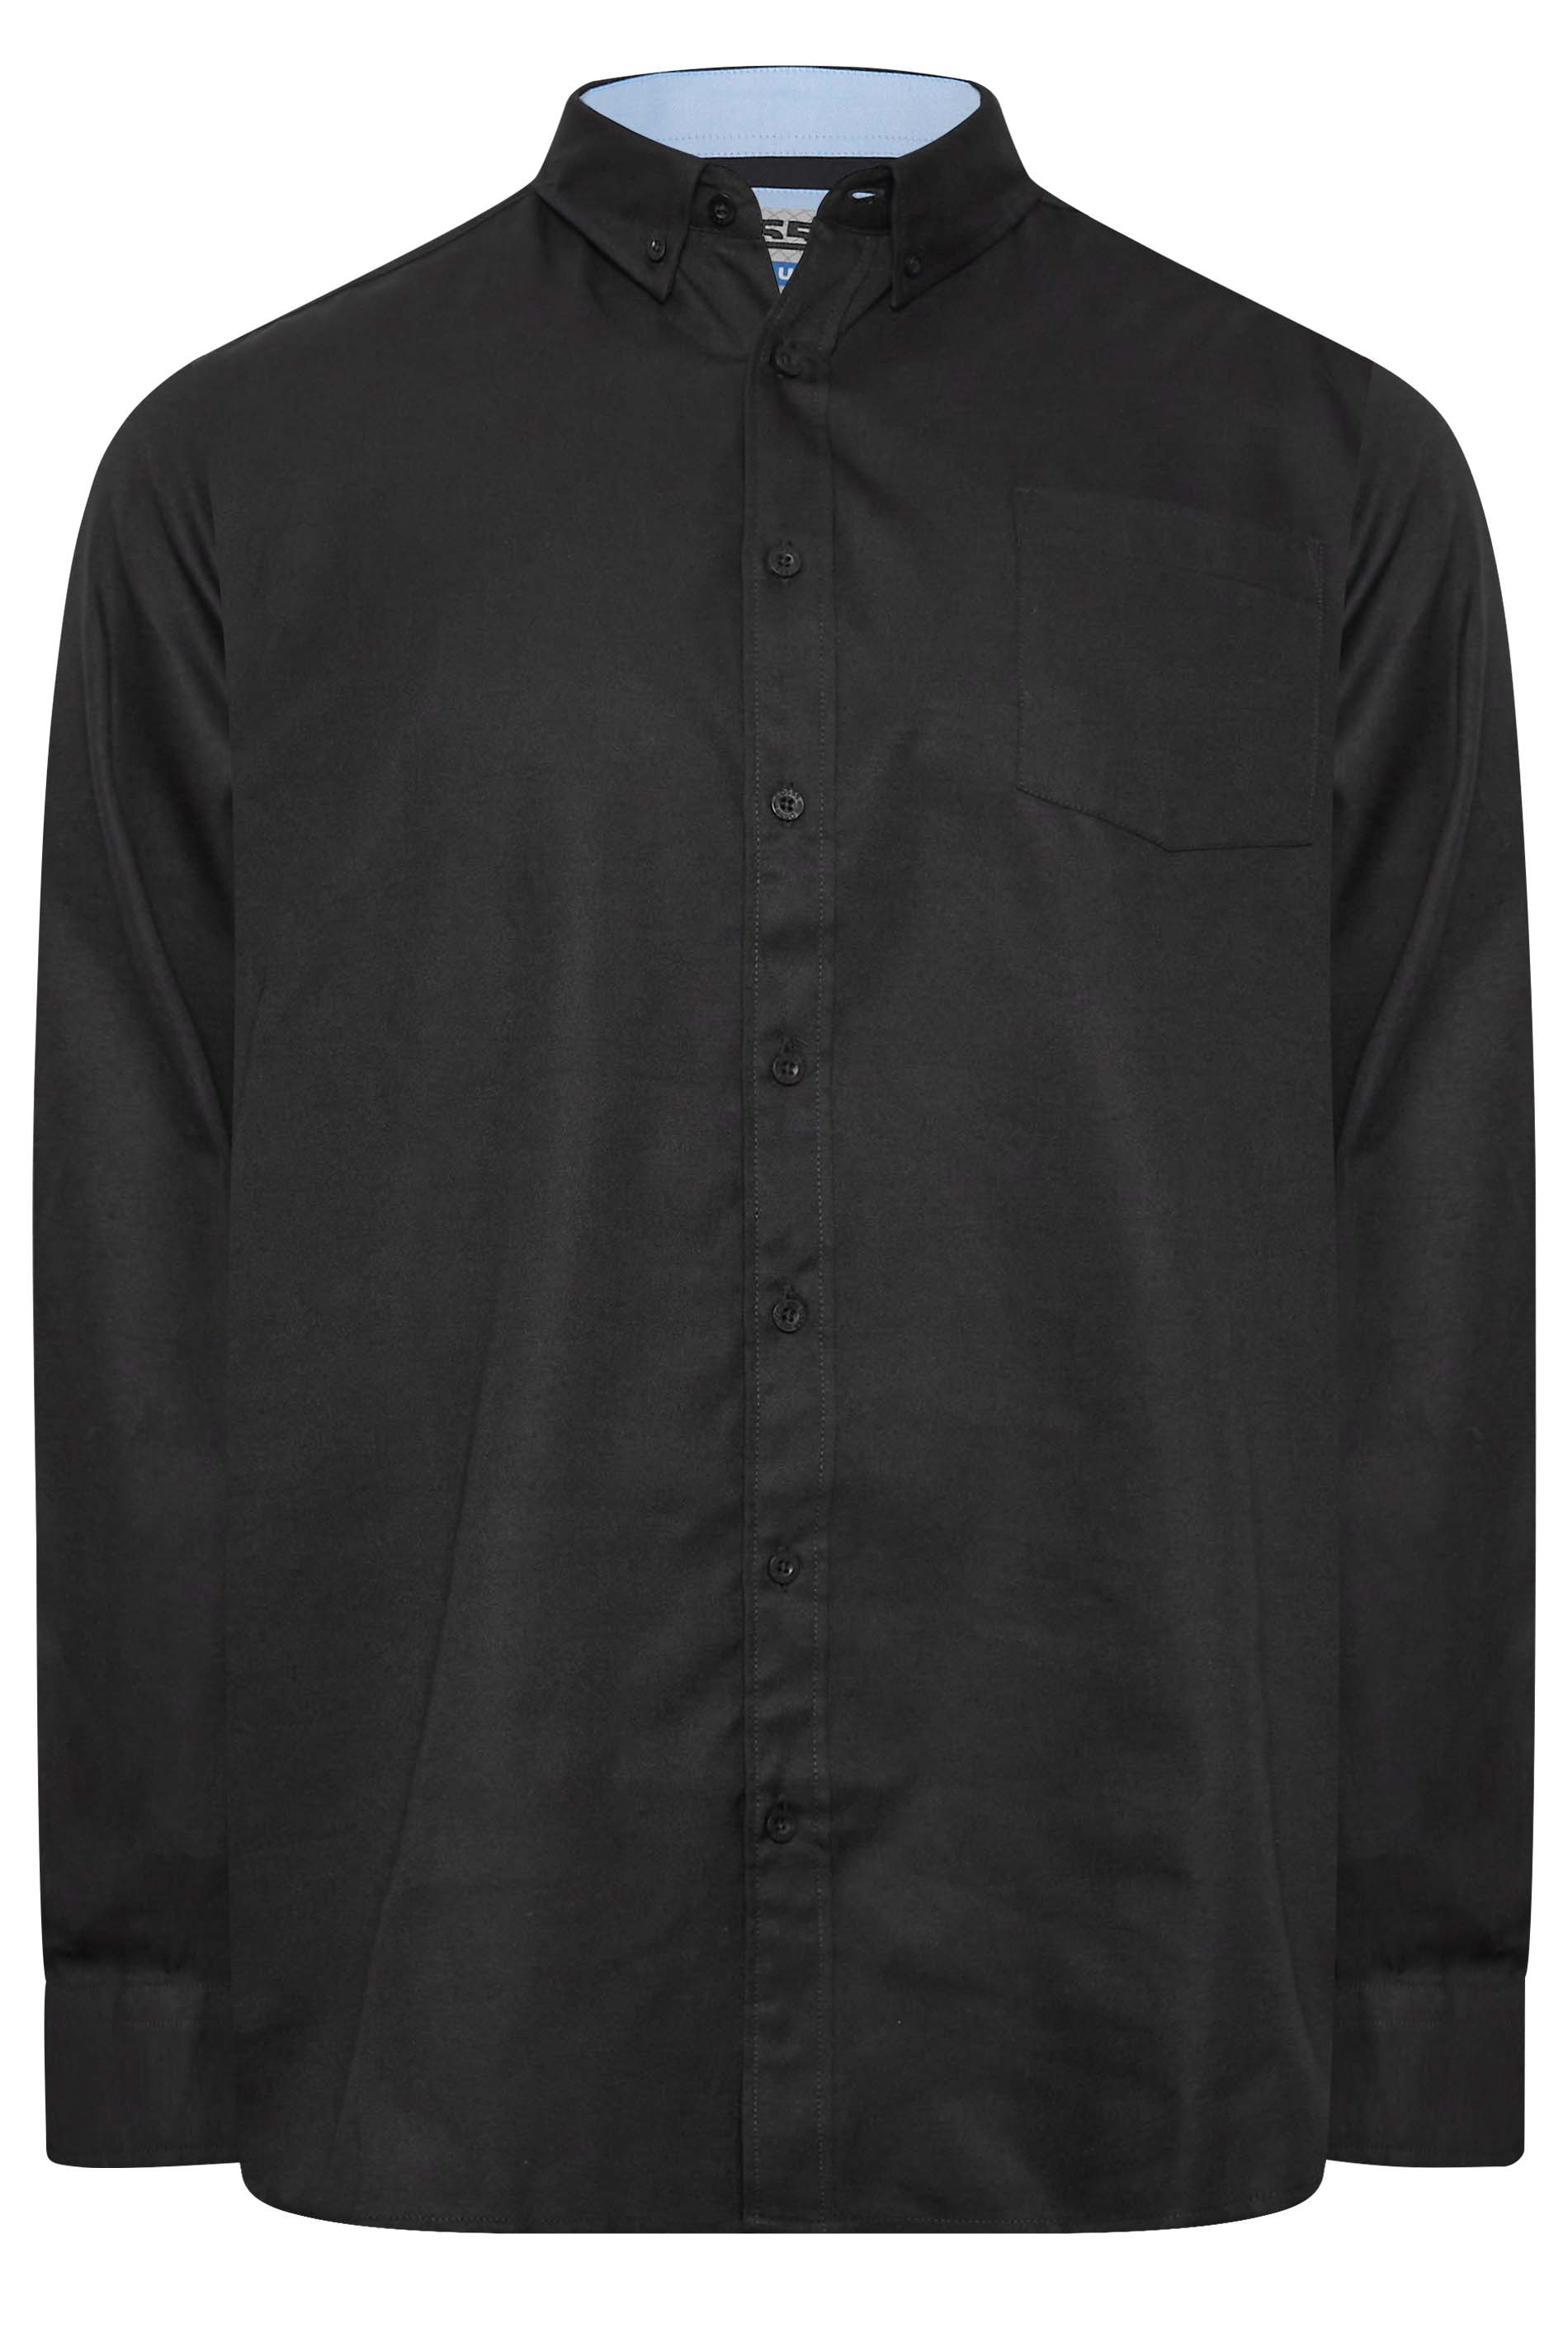 D555 Big & Tall Black Long Sleeve Oxford Shirt | BadRhino 3